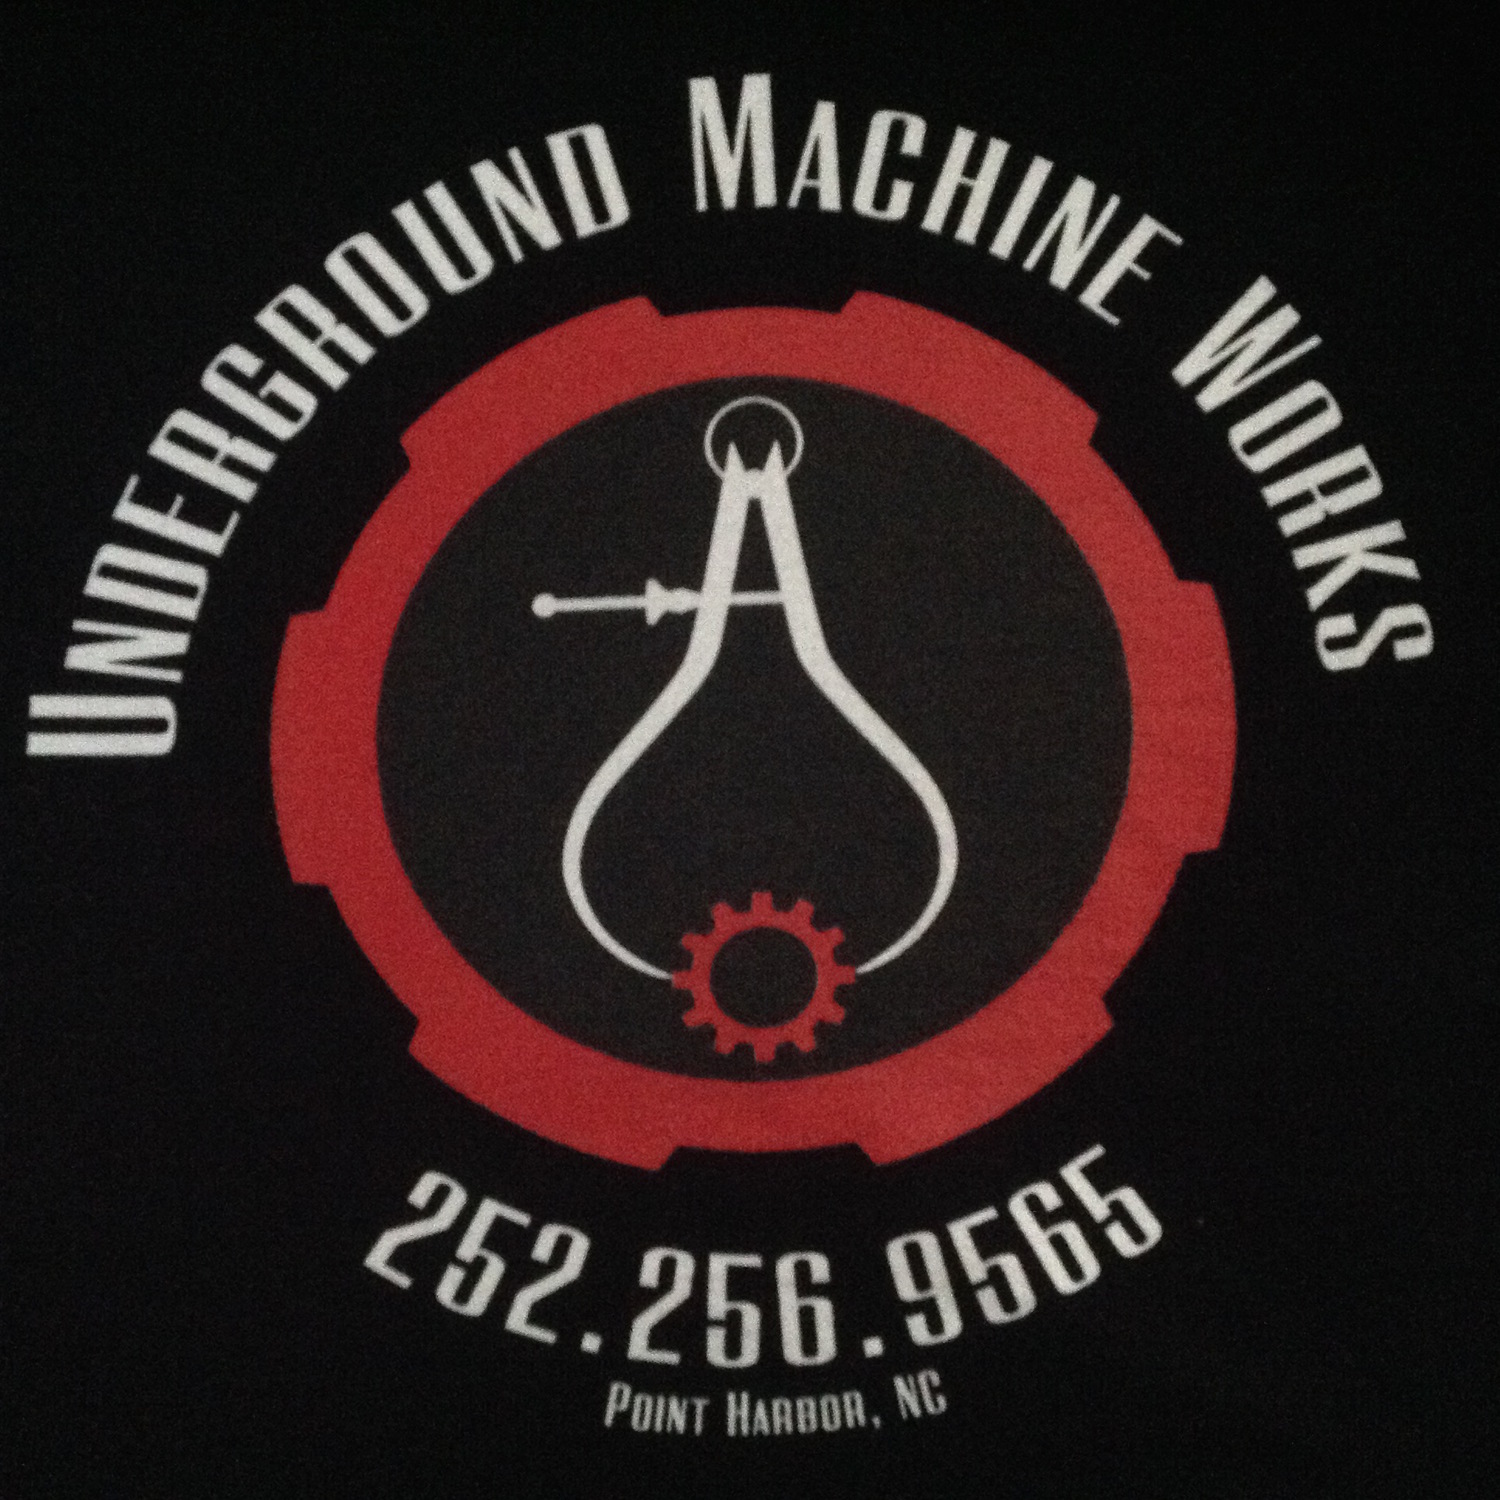 Underground Machine Works